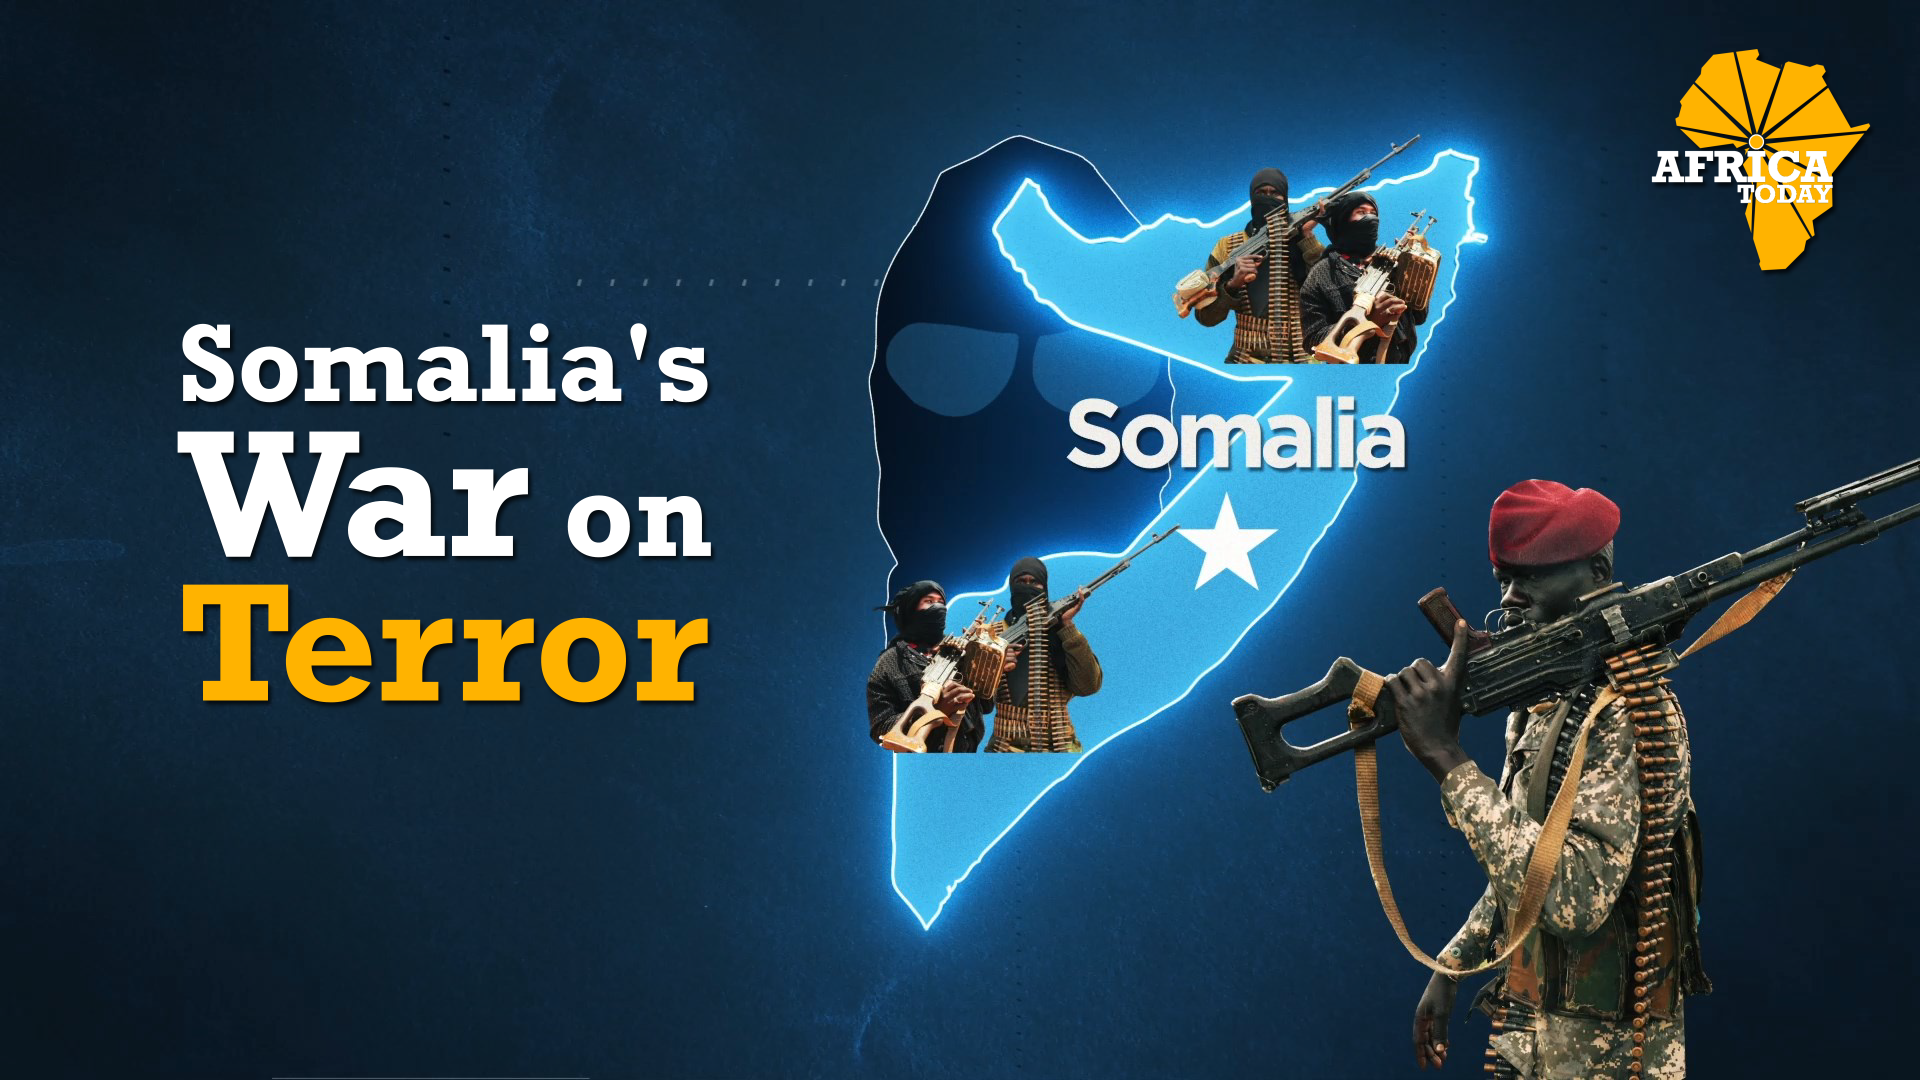 Somalia's war on terror